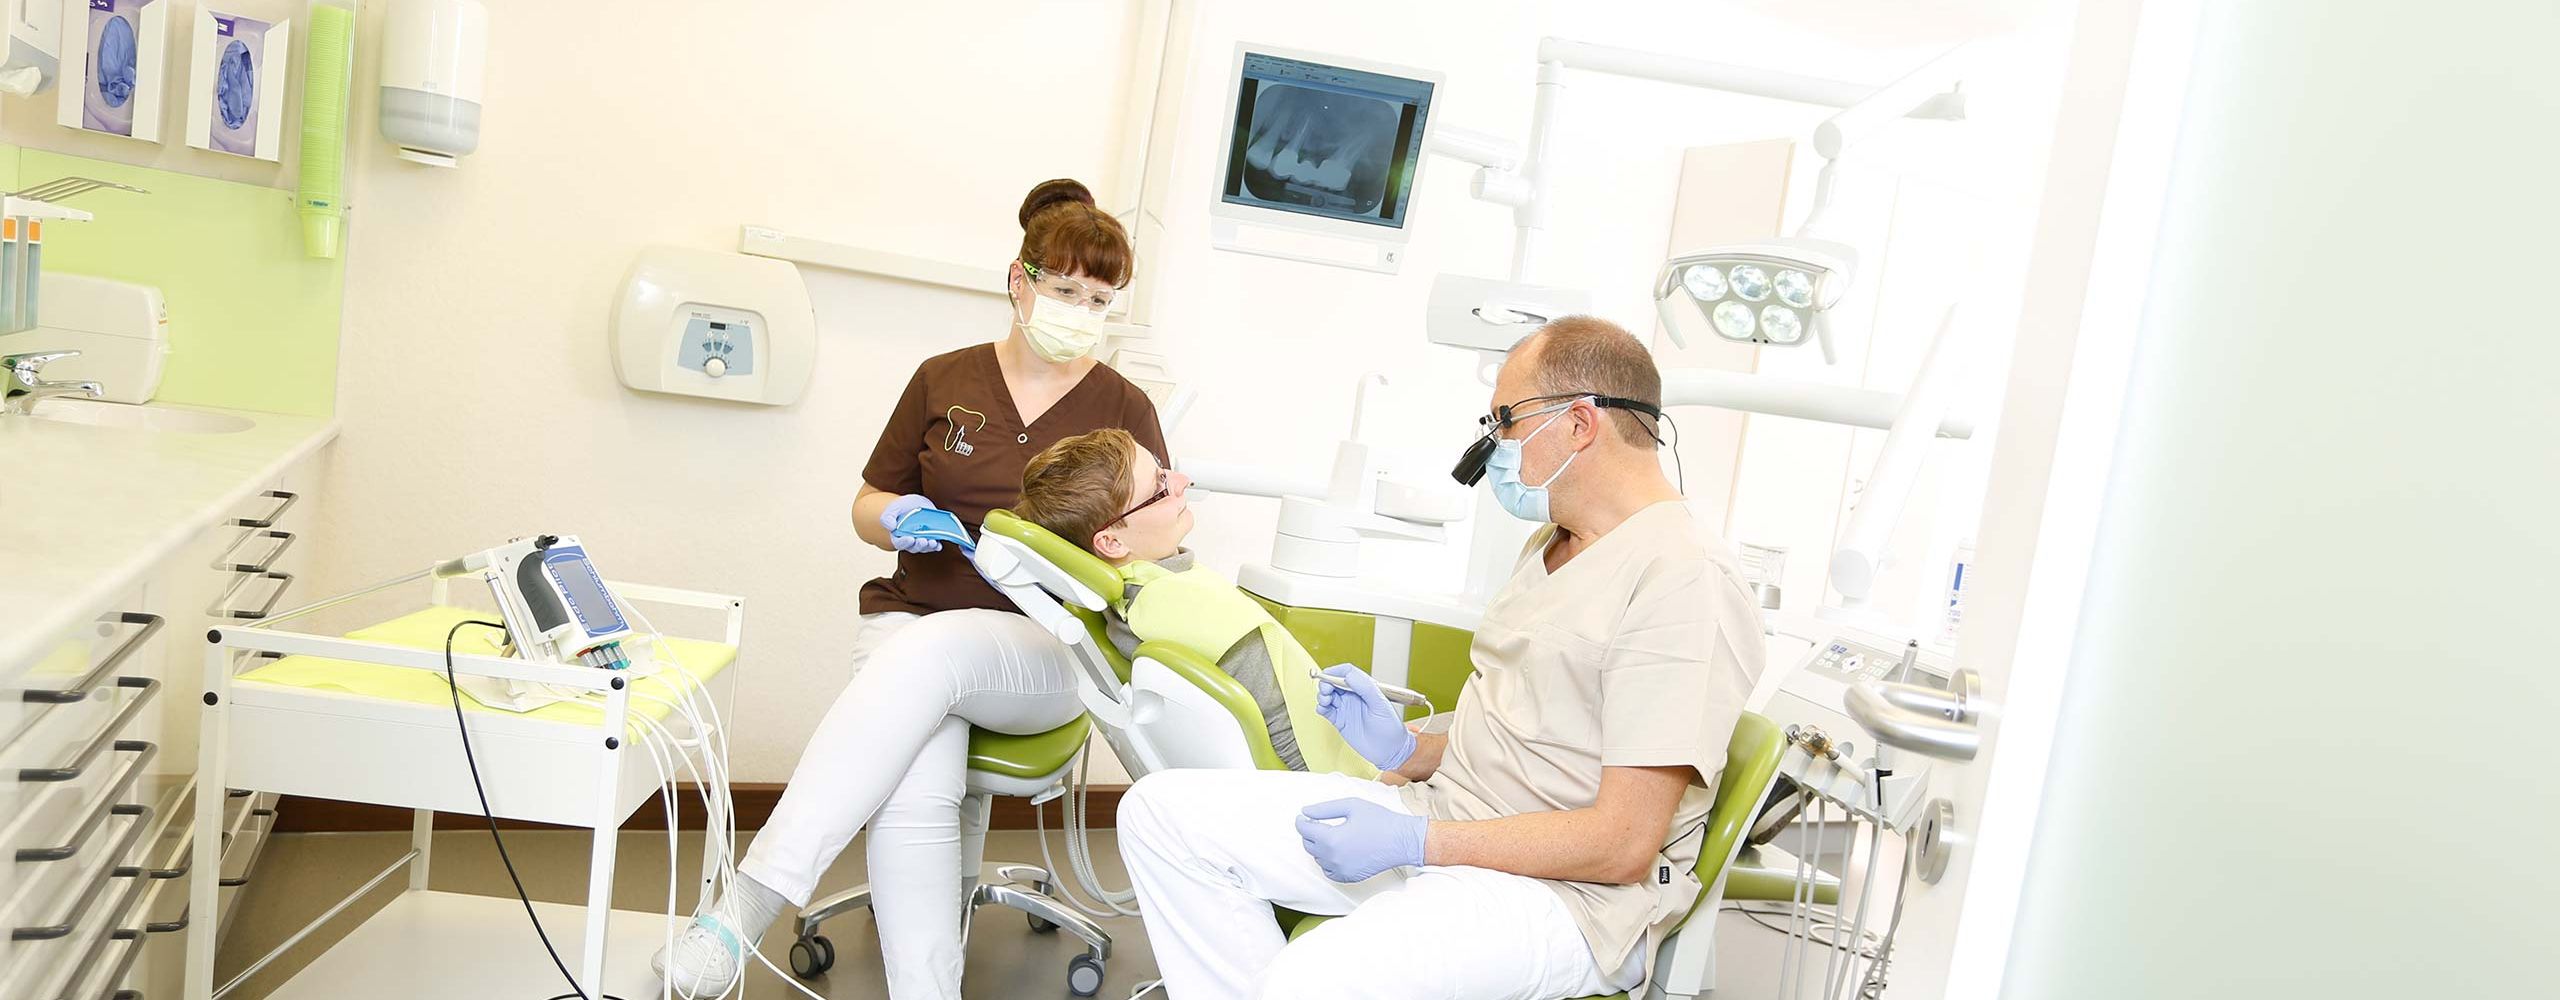 Zahnerhaltsbehandlung in der Zahnarztpraxis Dr. Schwarz in Erfurt